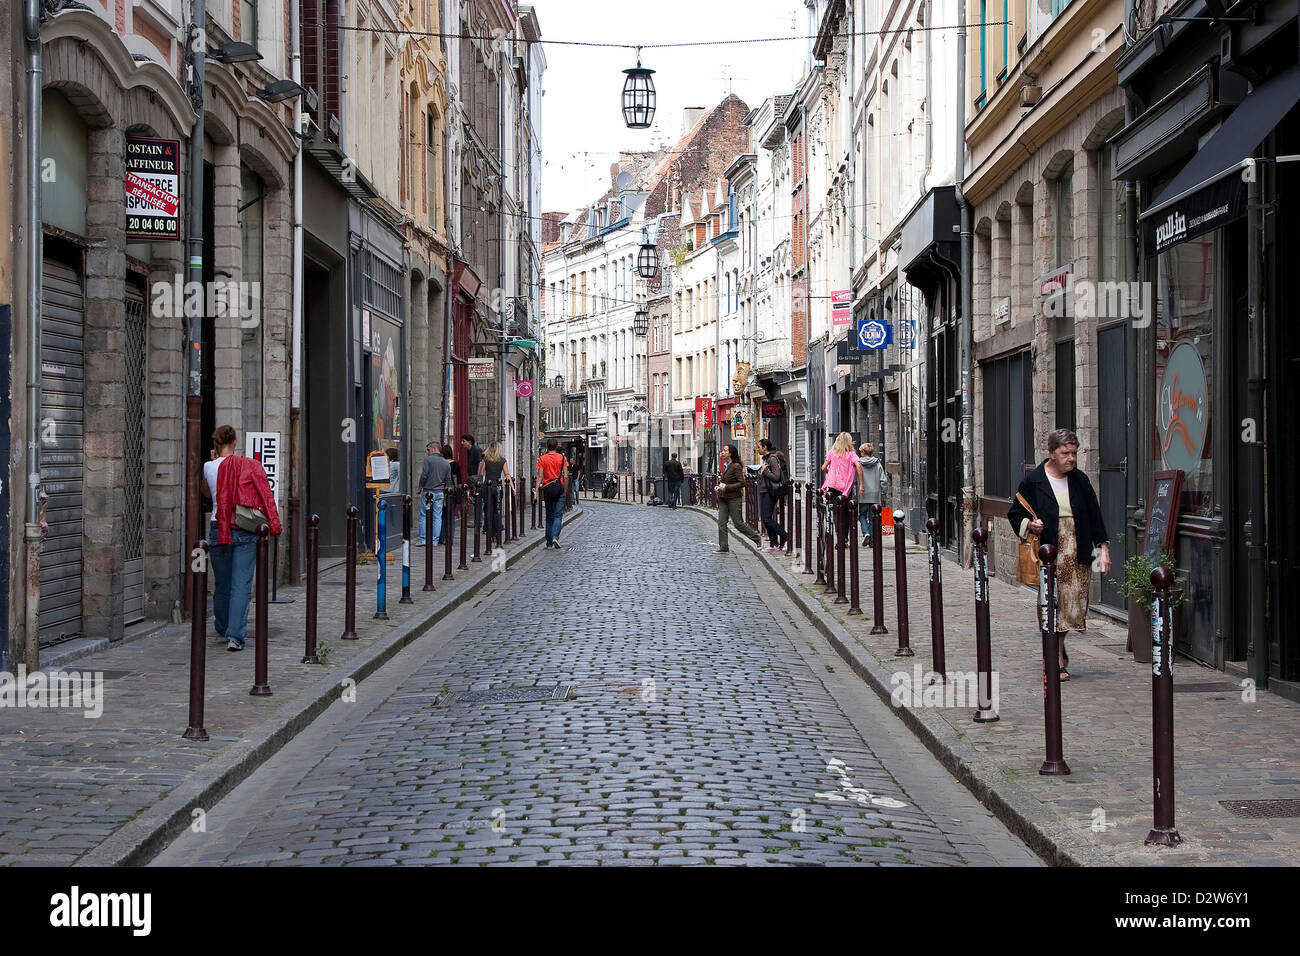 An urban street scene in Rue de la Clef, Lille, France. Stock Photo